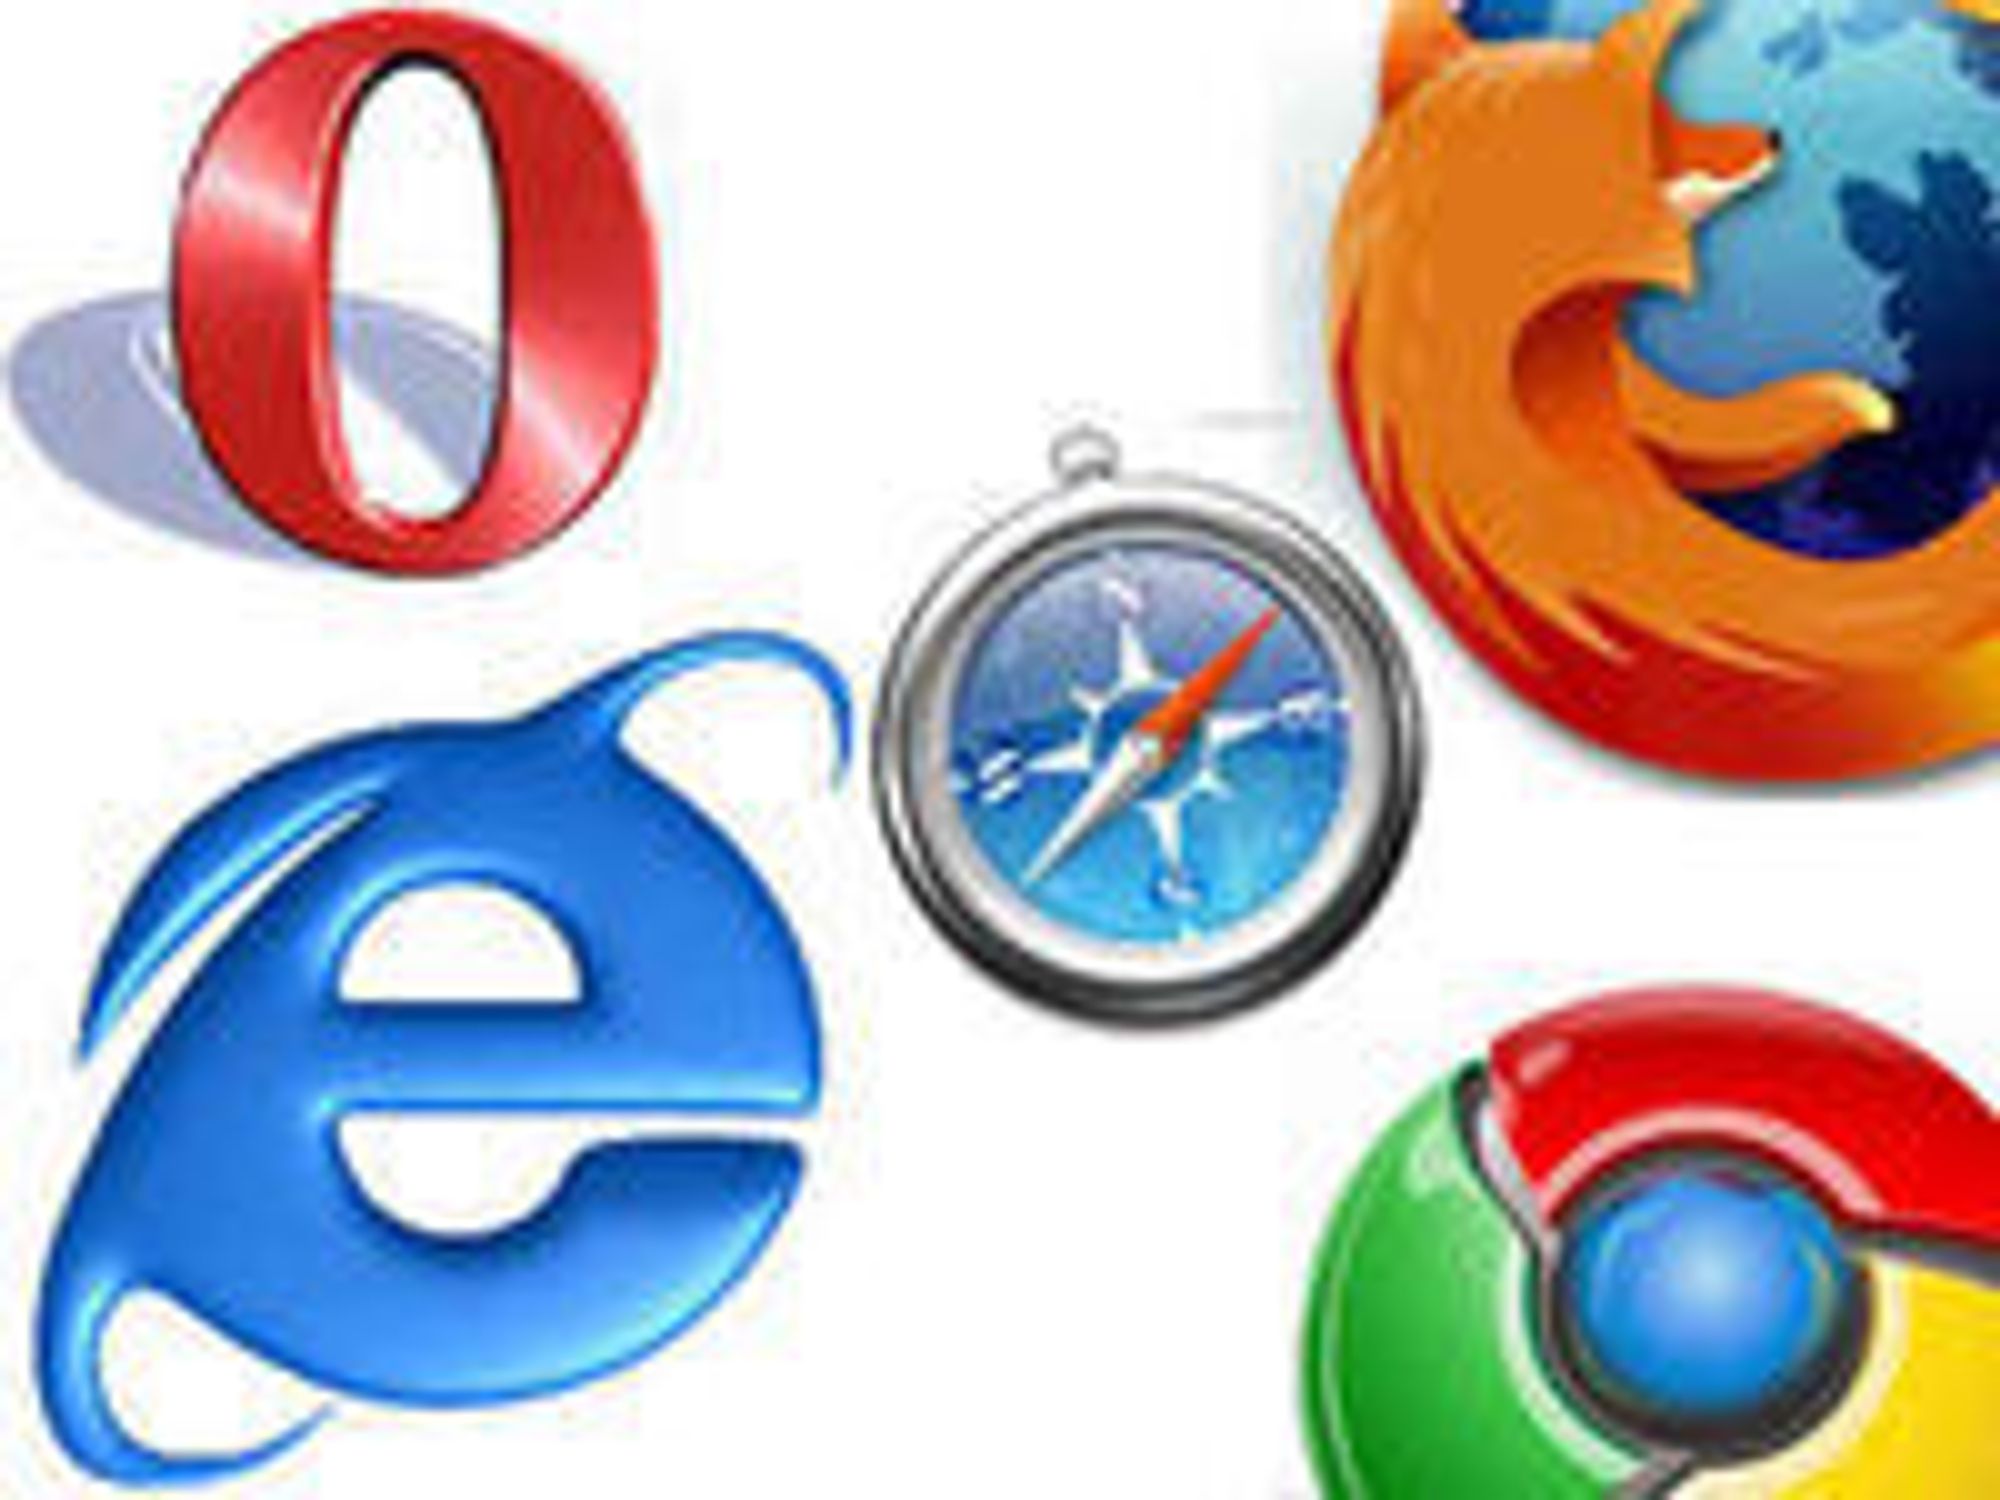 Europeisk brukere skal kunne velge fritt mellom Opera, Internet Explorer, Safari, Firefox og Chrome.